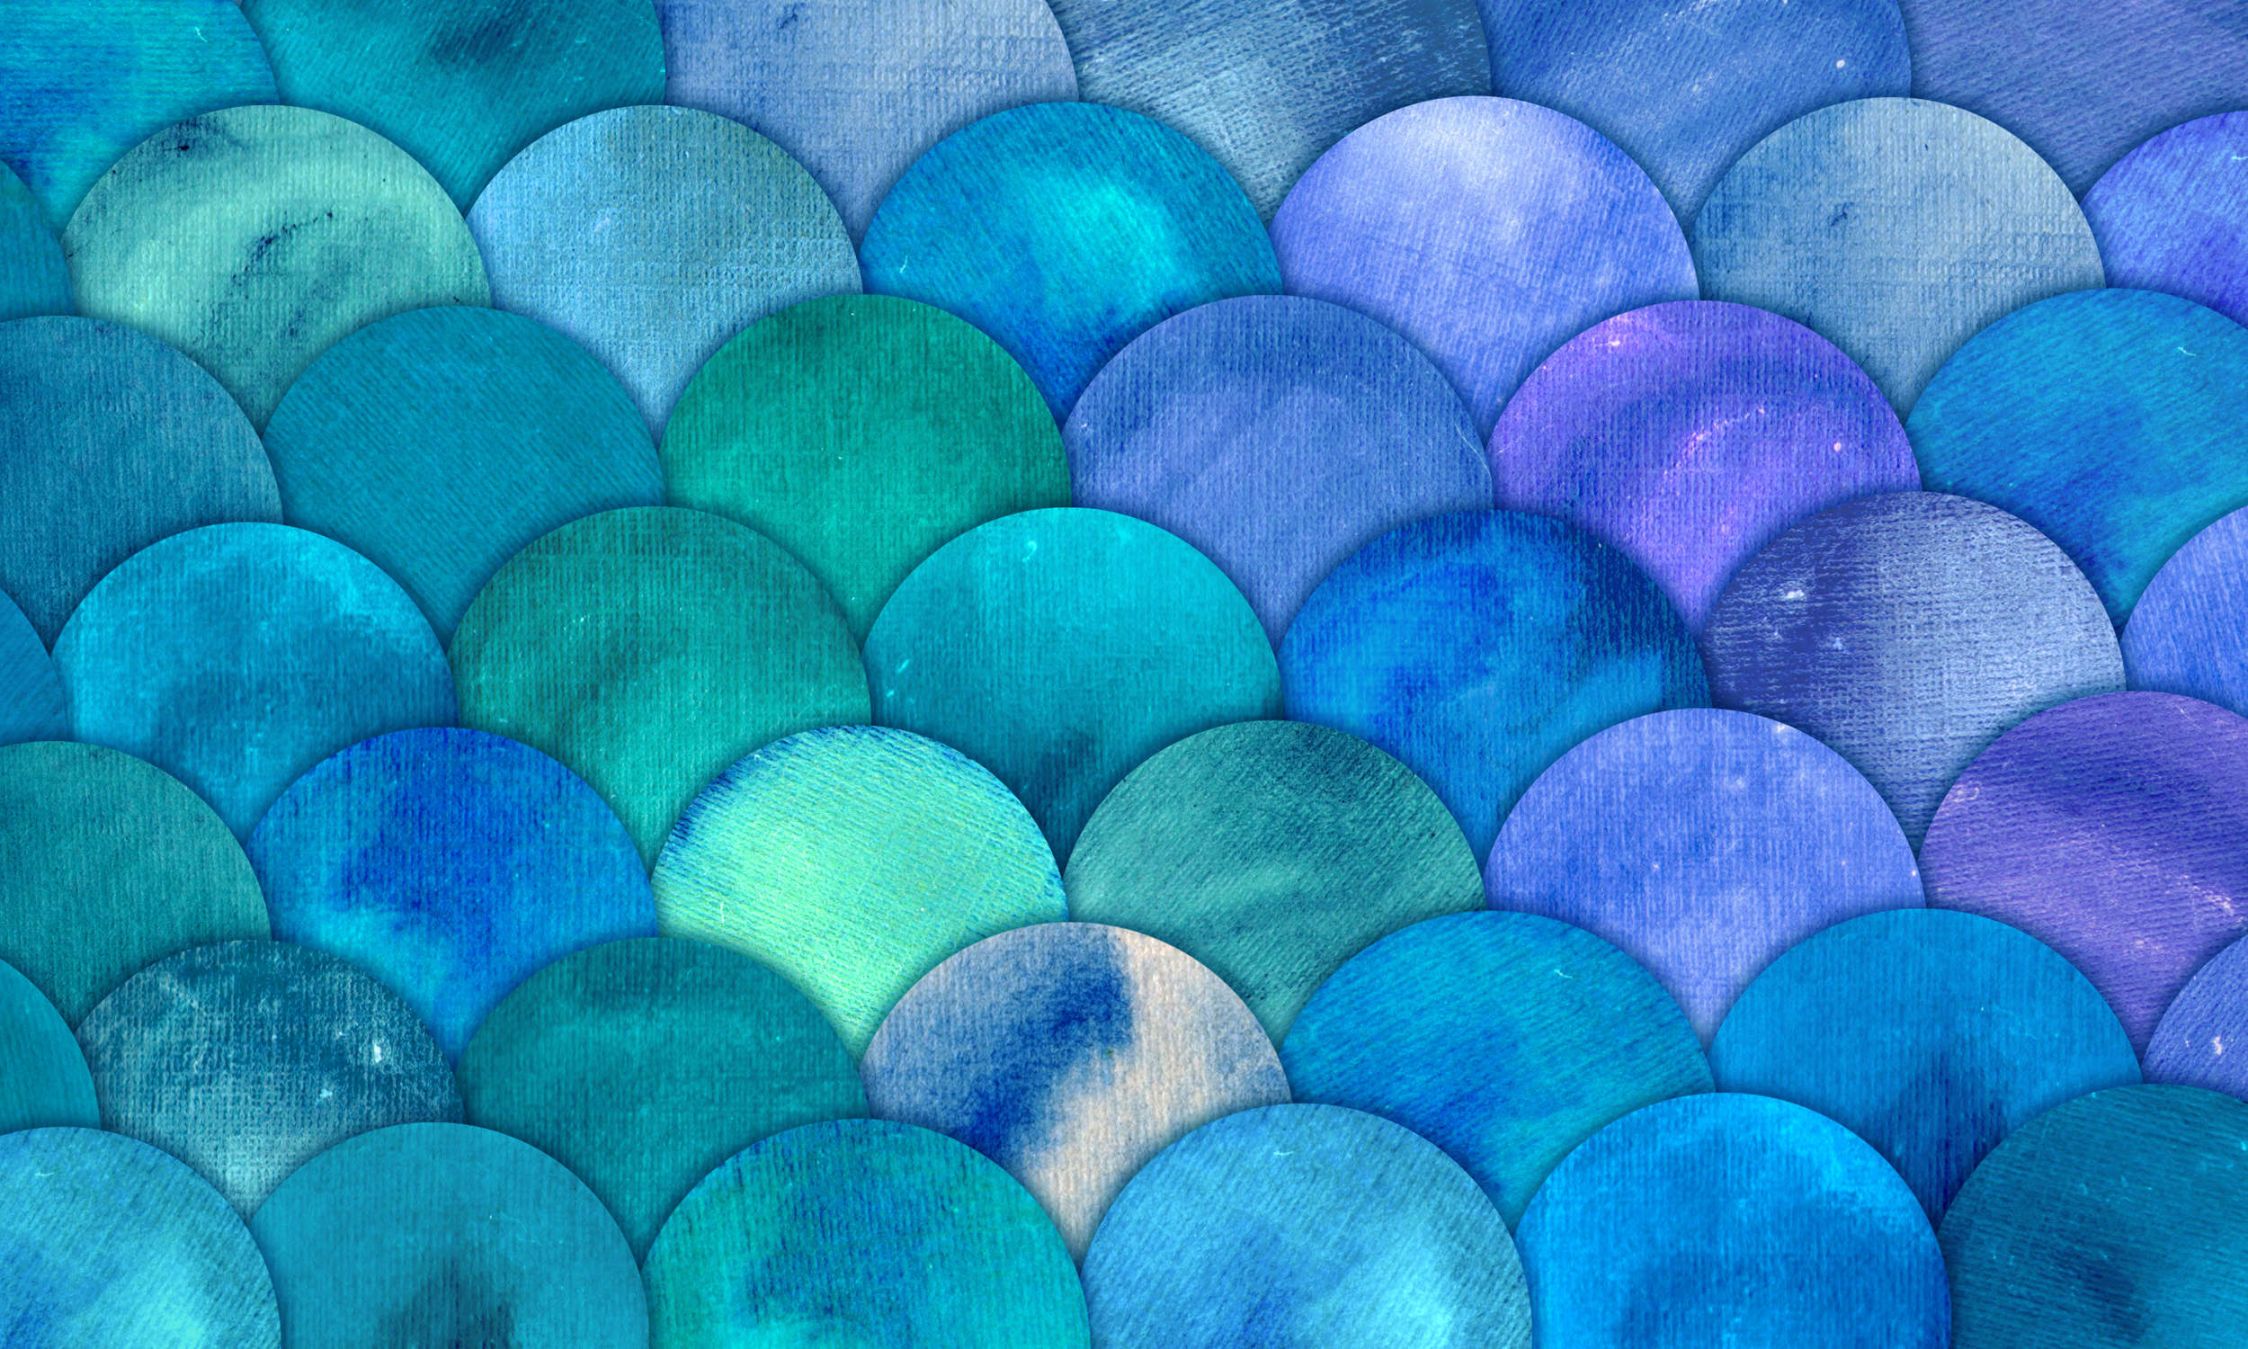             Fototapete mit Fischschuppen Muster – Glattes & perlmutt-schimmerndes Vlies
        